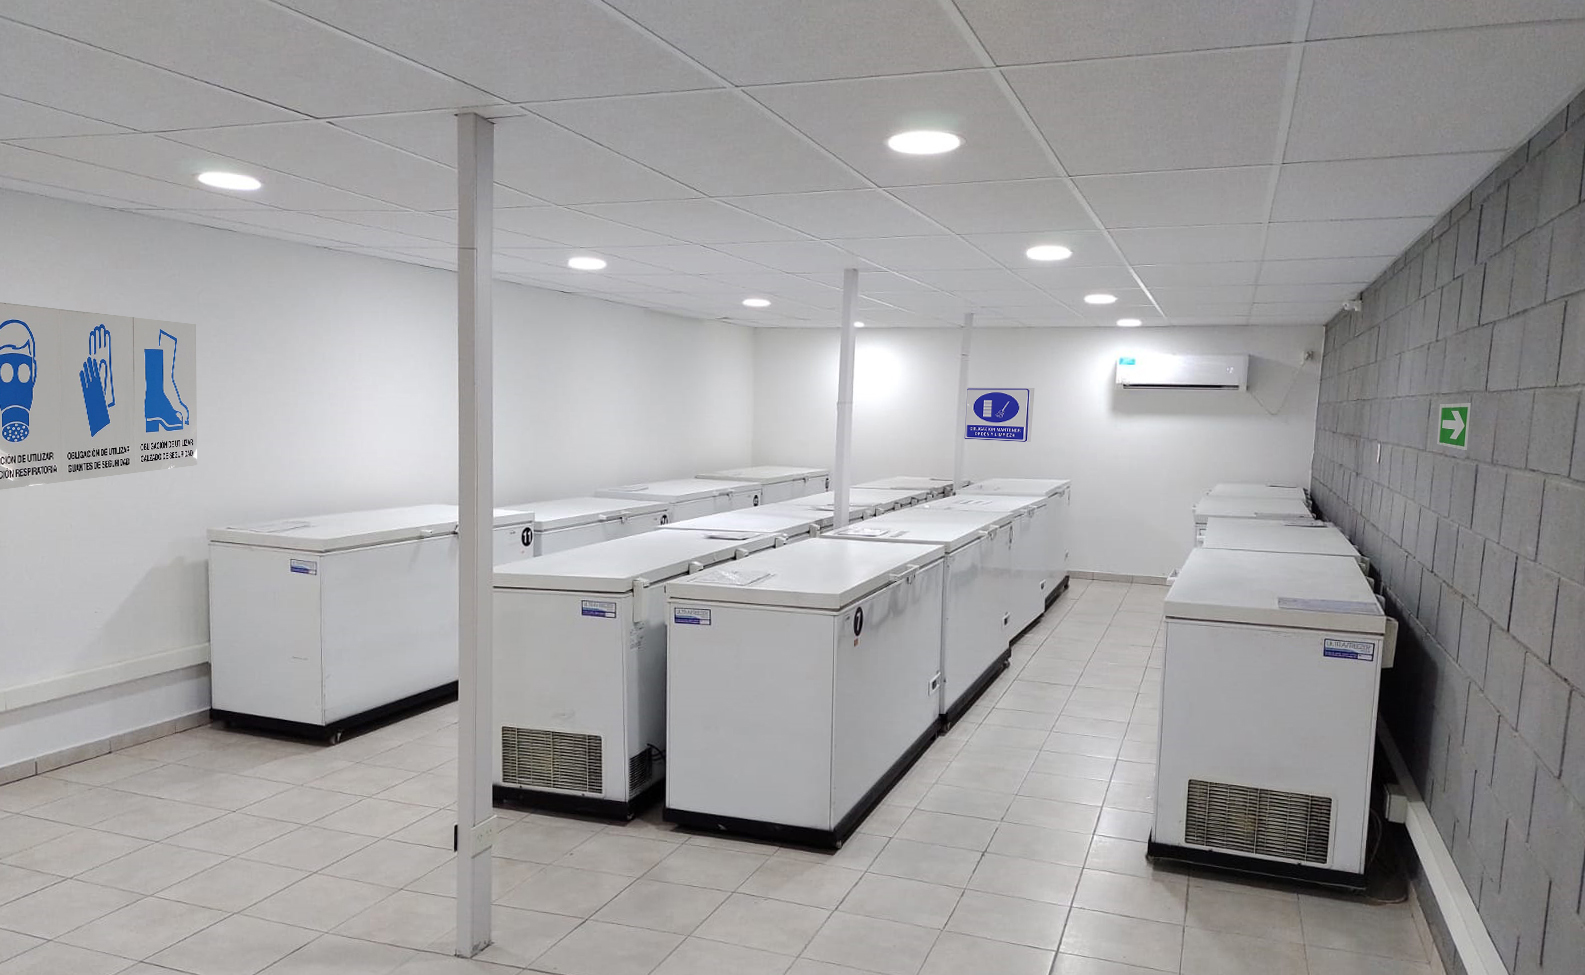 Osme Logística inauguró nuevo espacio para refrigeración de mercadería